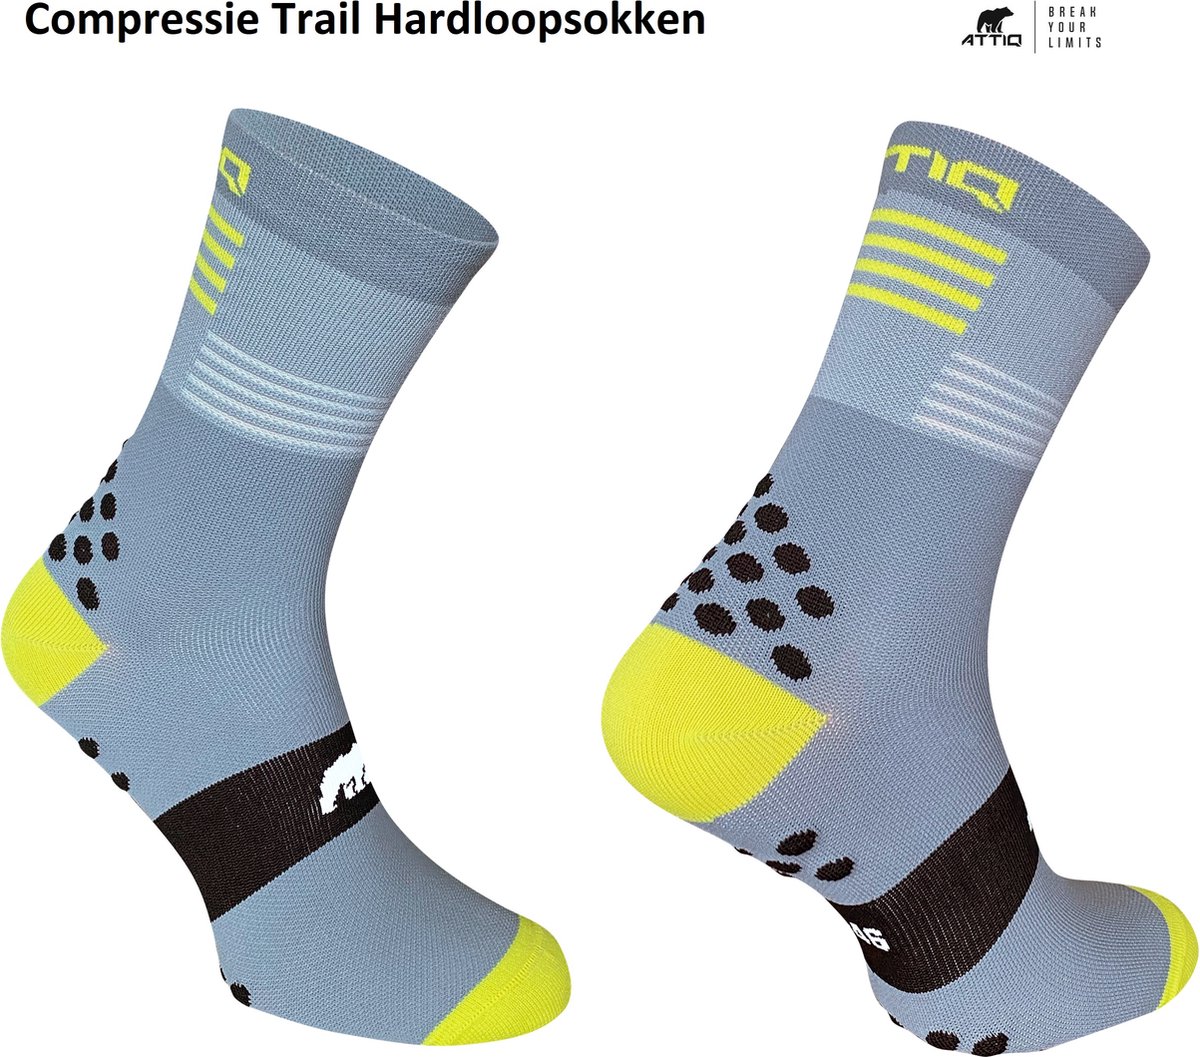 Trail Compressie Hardloopsokken - Grijs/Geel 37-41